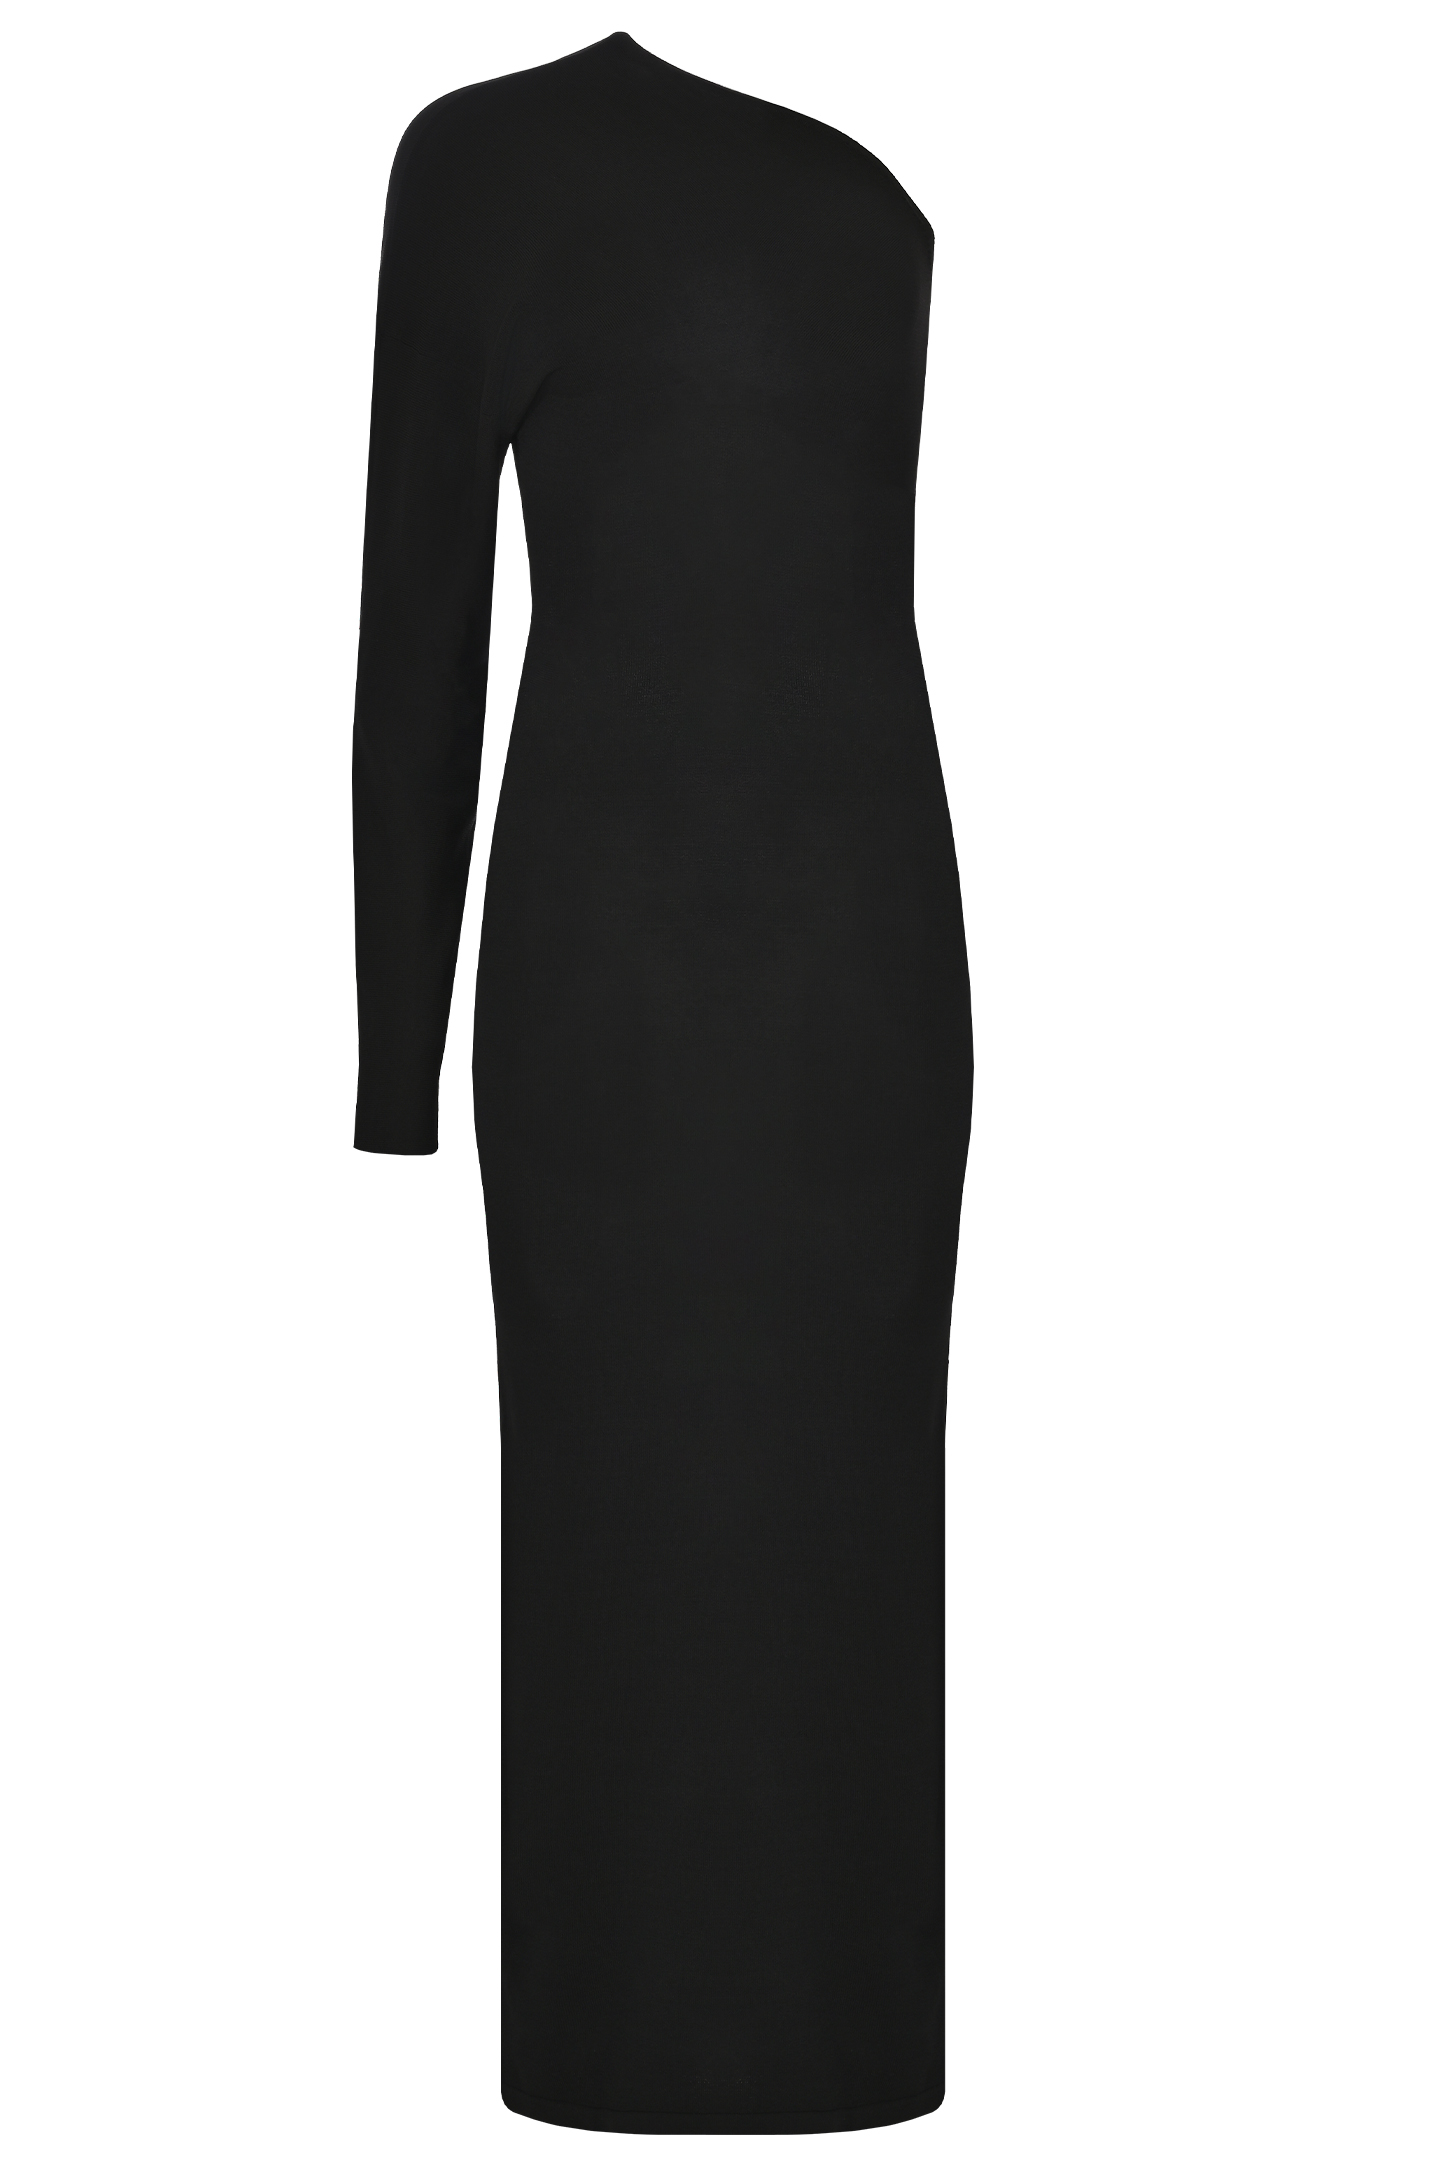 Платье с открытым плечом JACOB LEE WKD0107SS24B, цвет: Черный, Женский